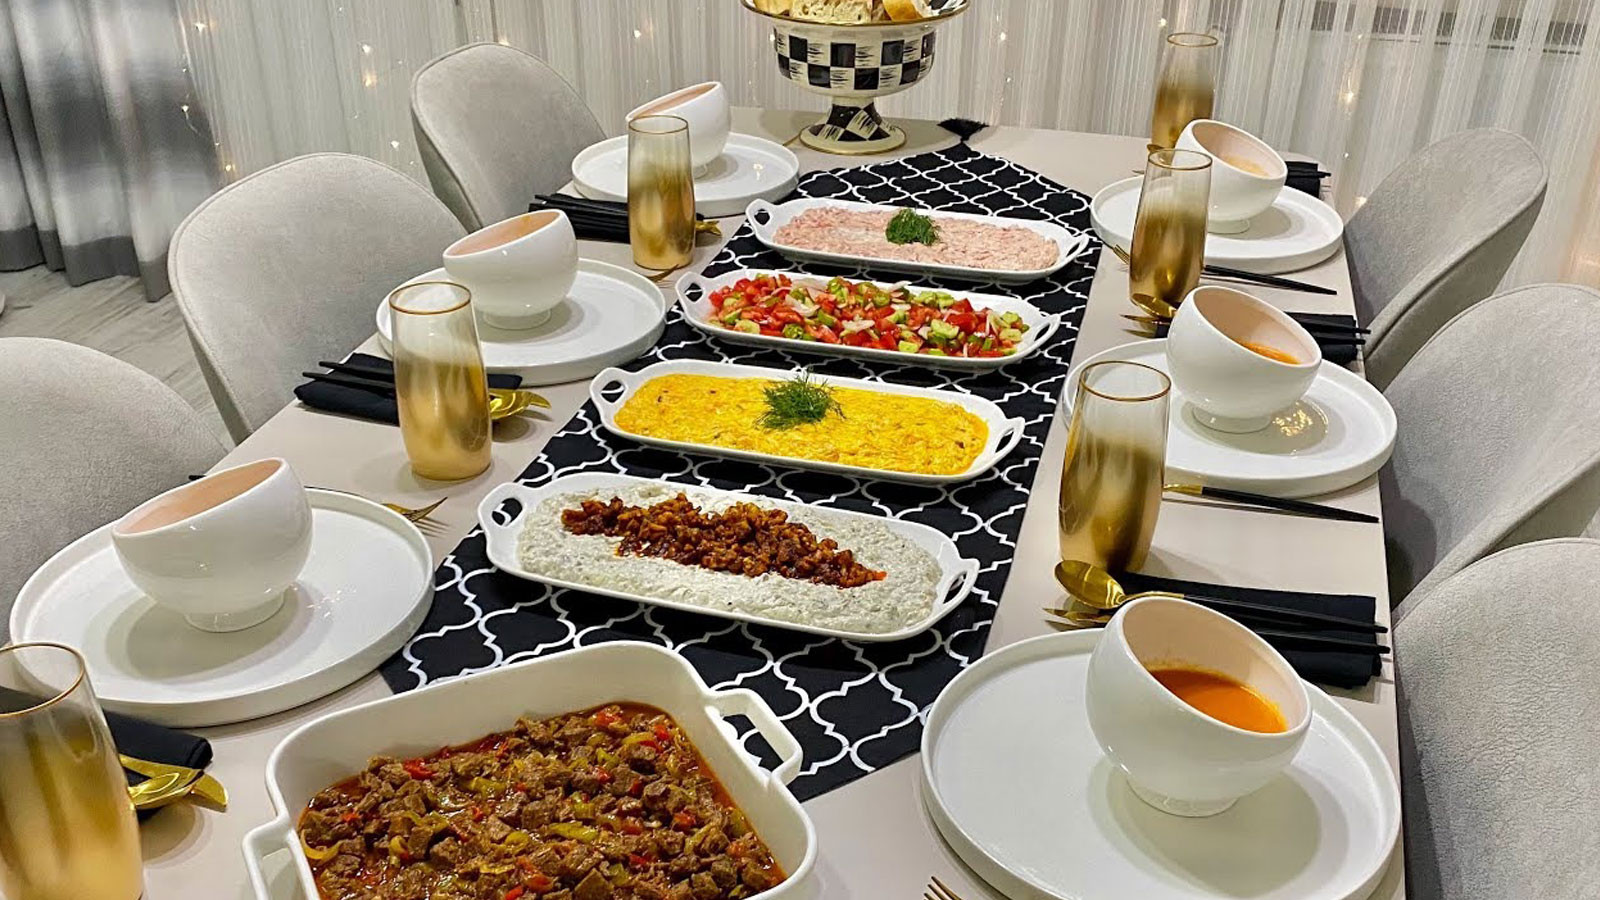 Glutensiz iftar menüsü mercimek çorbası, tas kebabı, pilav ve muhallebiden oluşuyor.